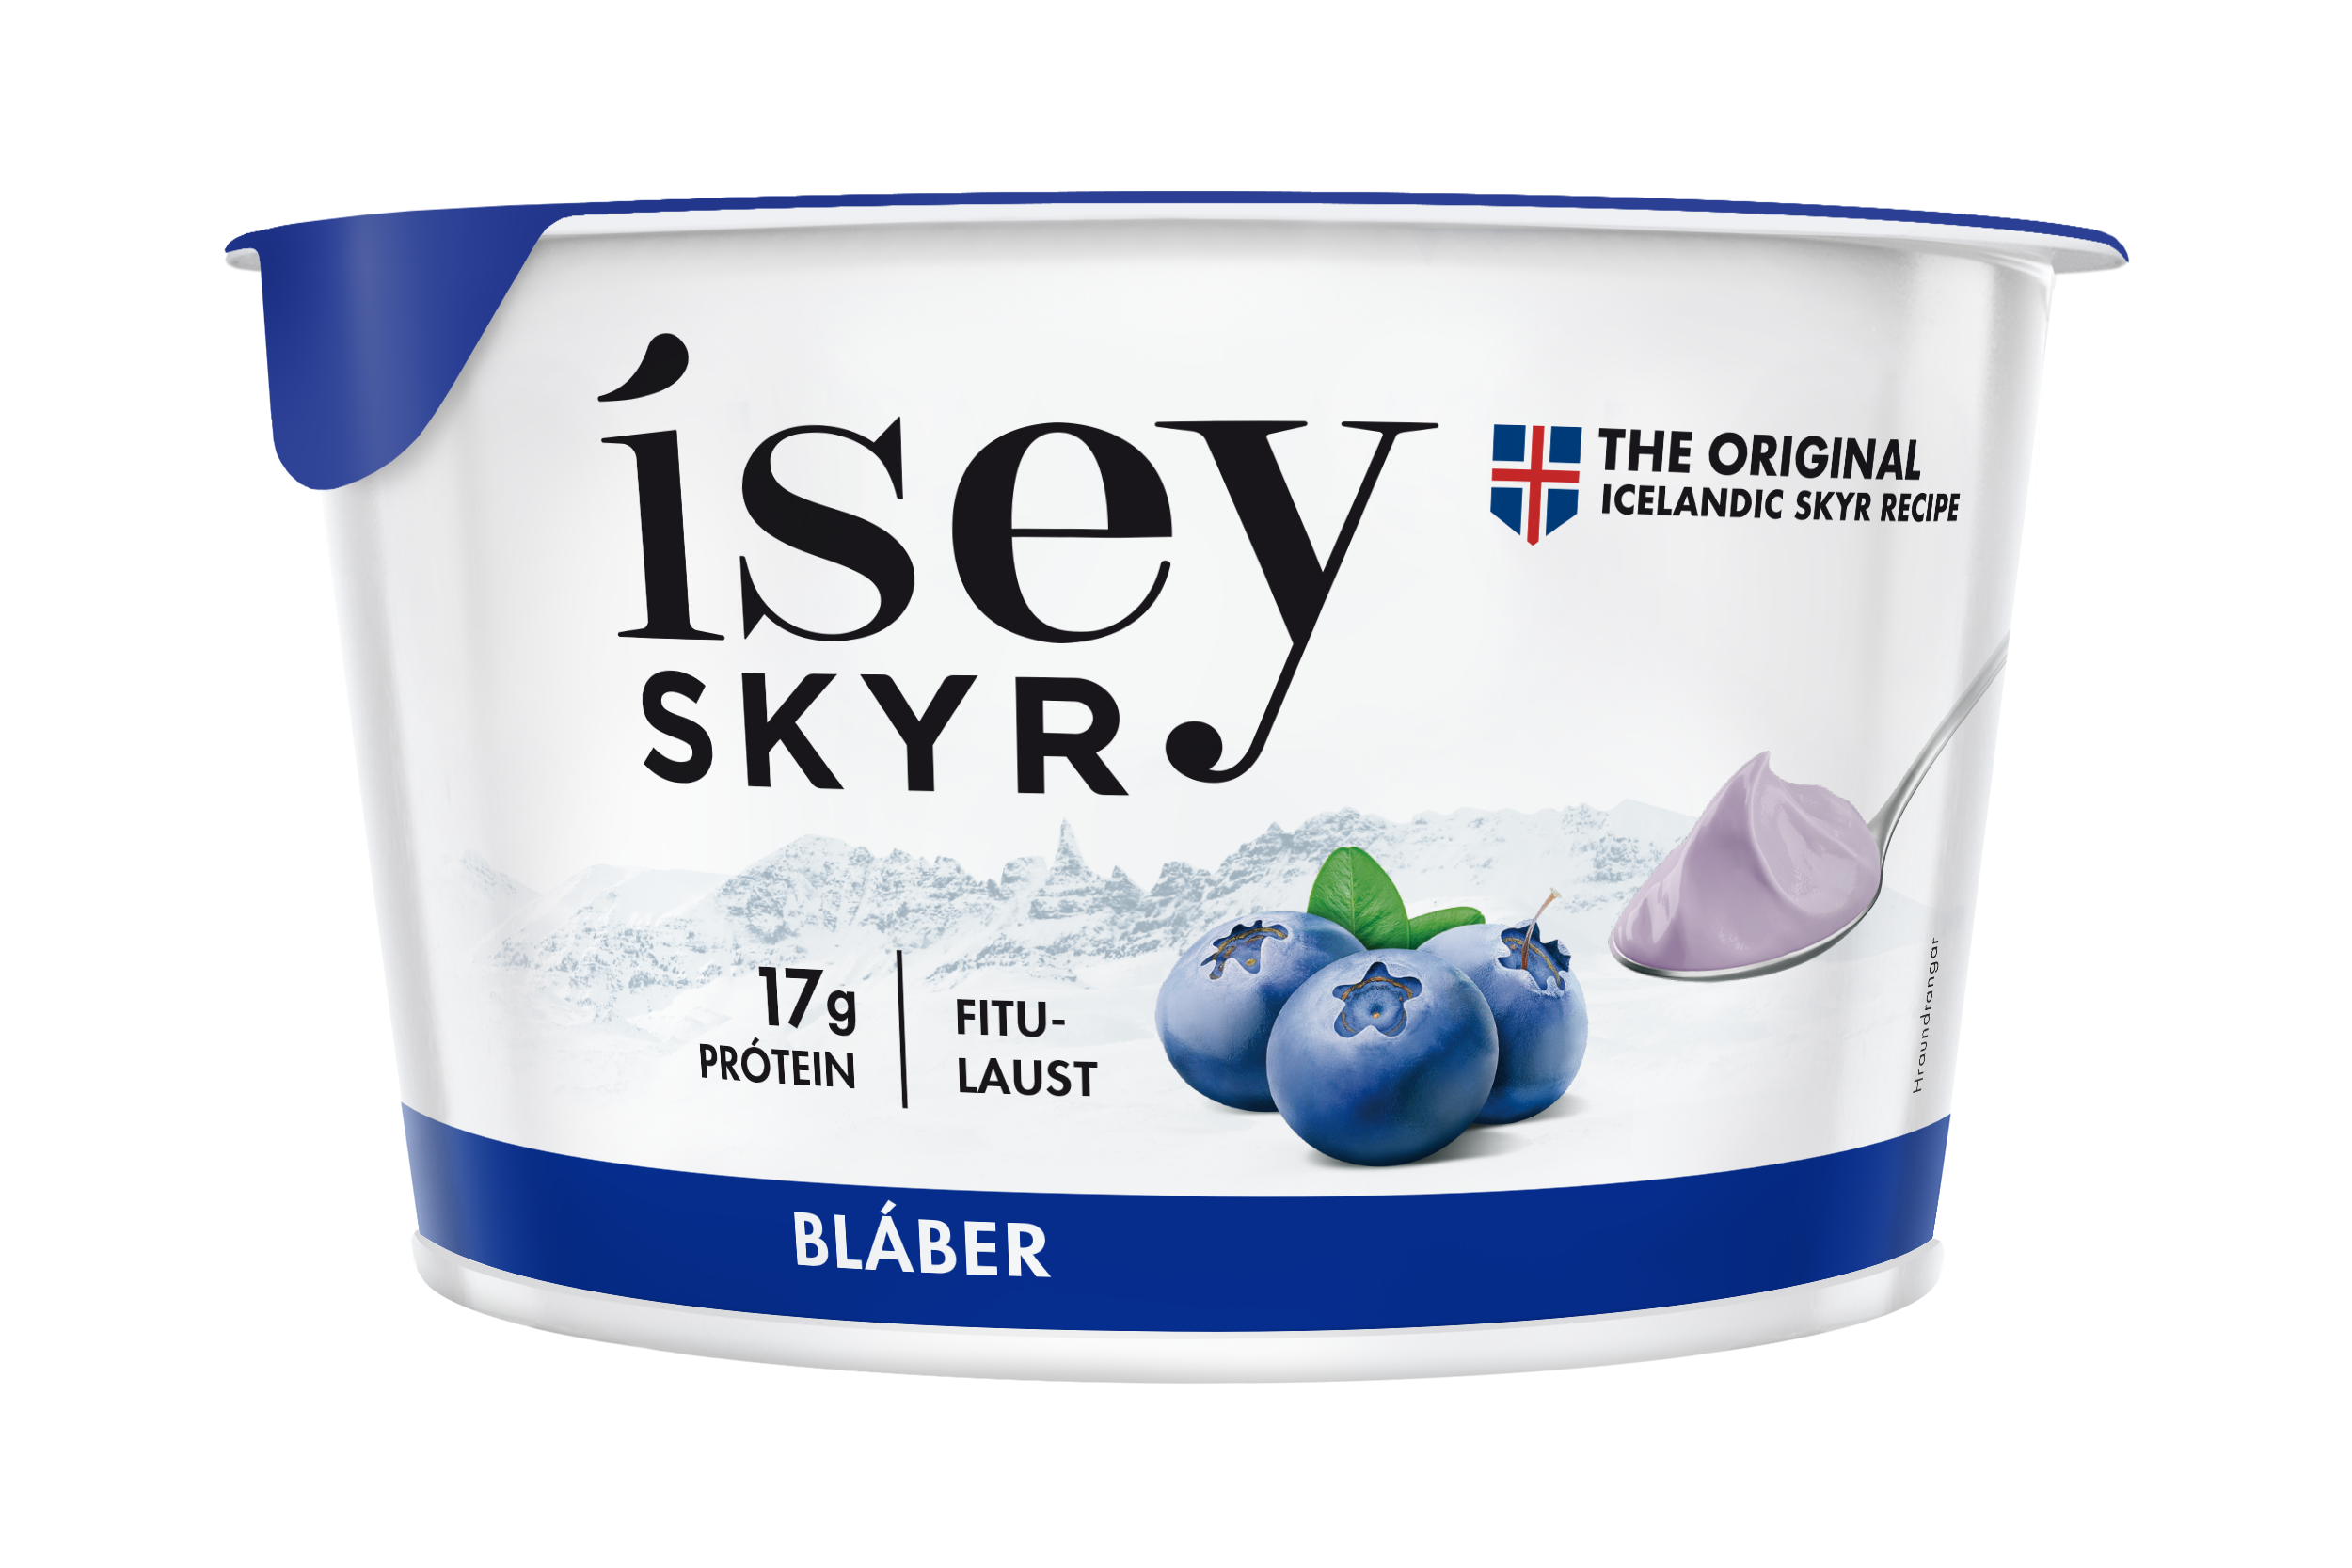 ISEY SKYR 藍莓冰島乳酪